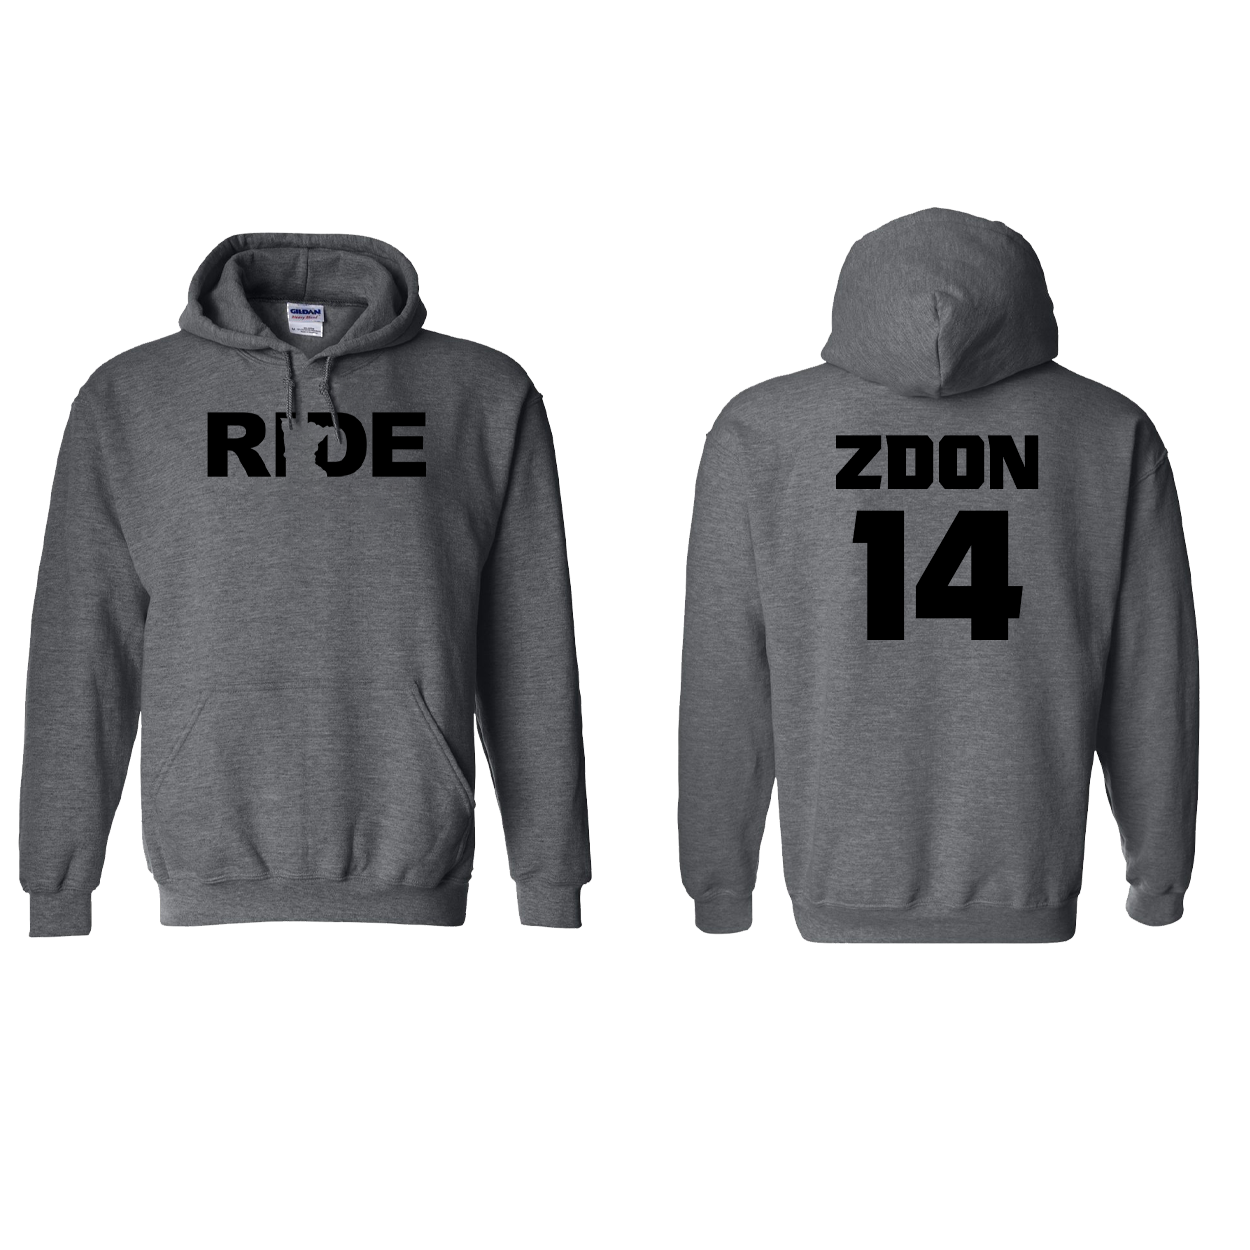 FXR BMX Race Team Classic Athlete Support Sweatshirt L. ZDON #14 Dark Heather (Black Logo)